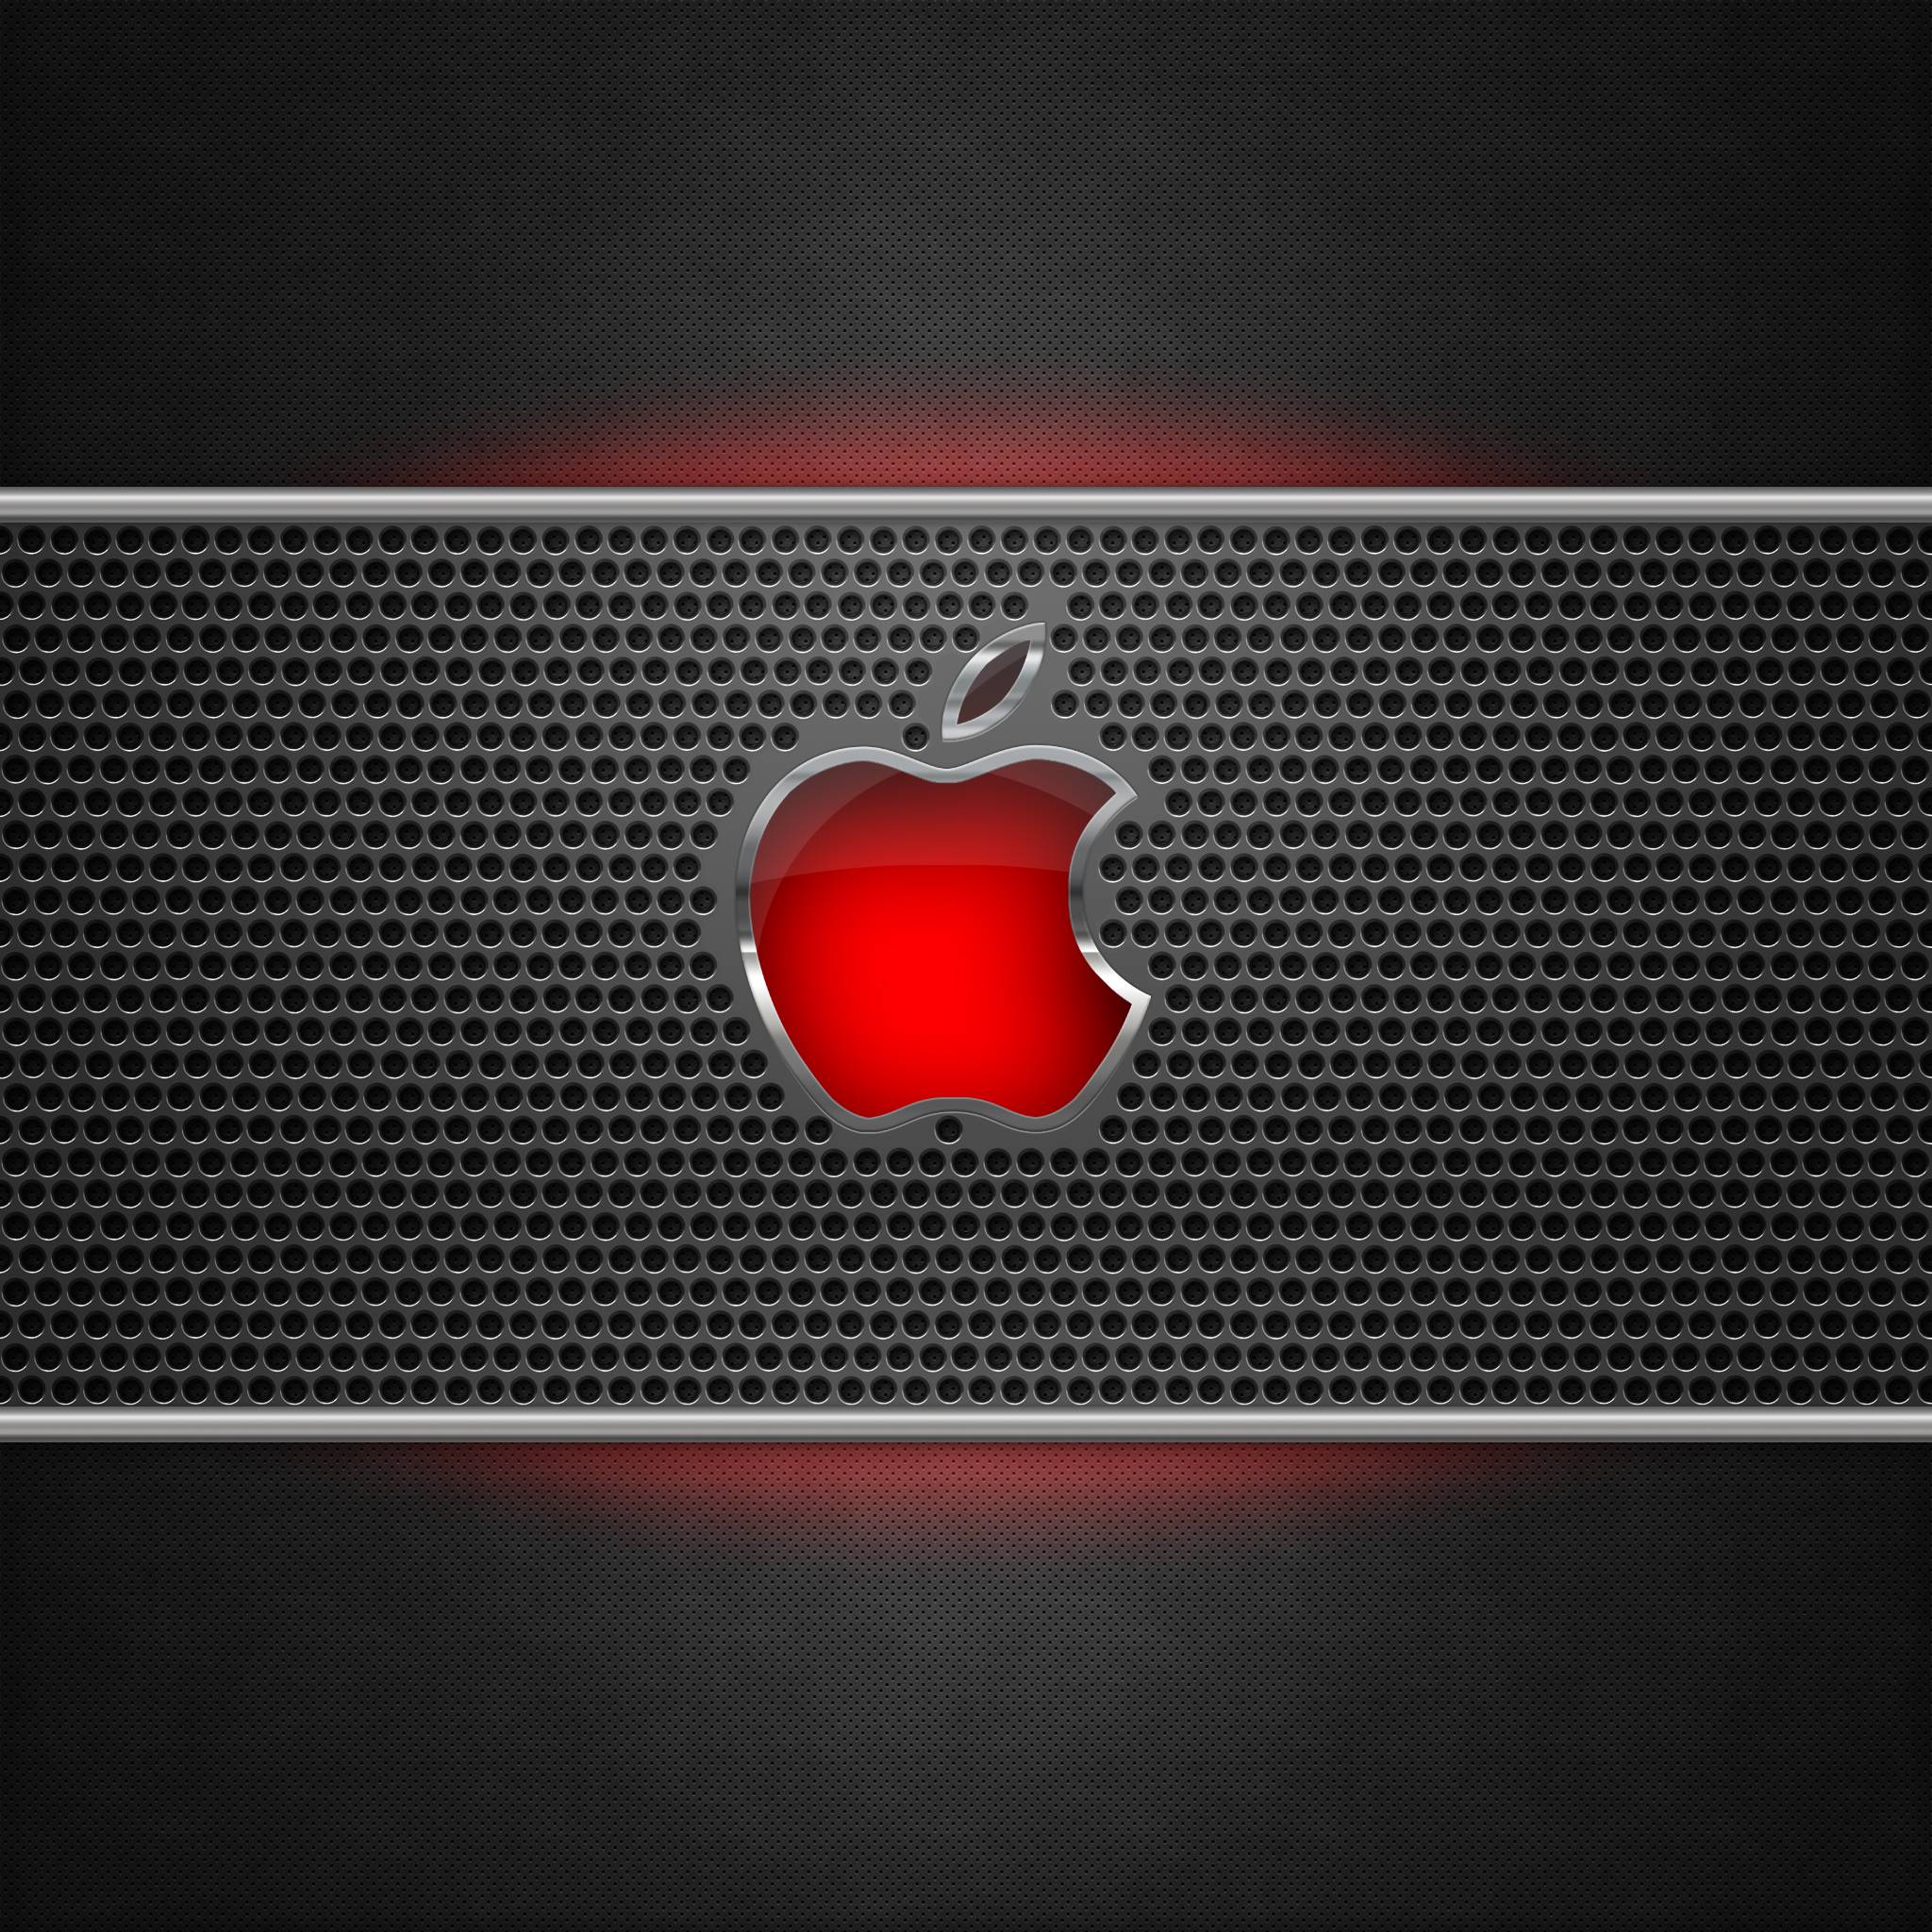 Apple Metal Glow Retina Wallpaper 2048x2048PX Wallpaper New iPad